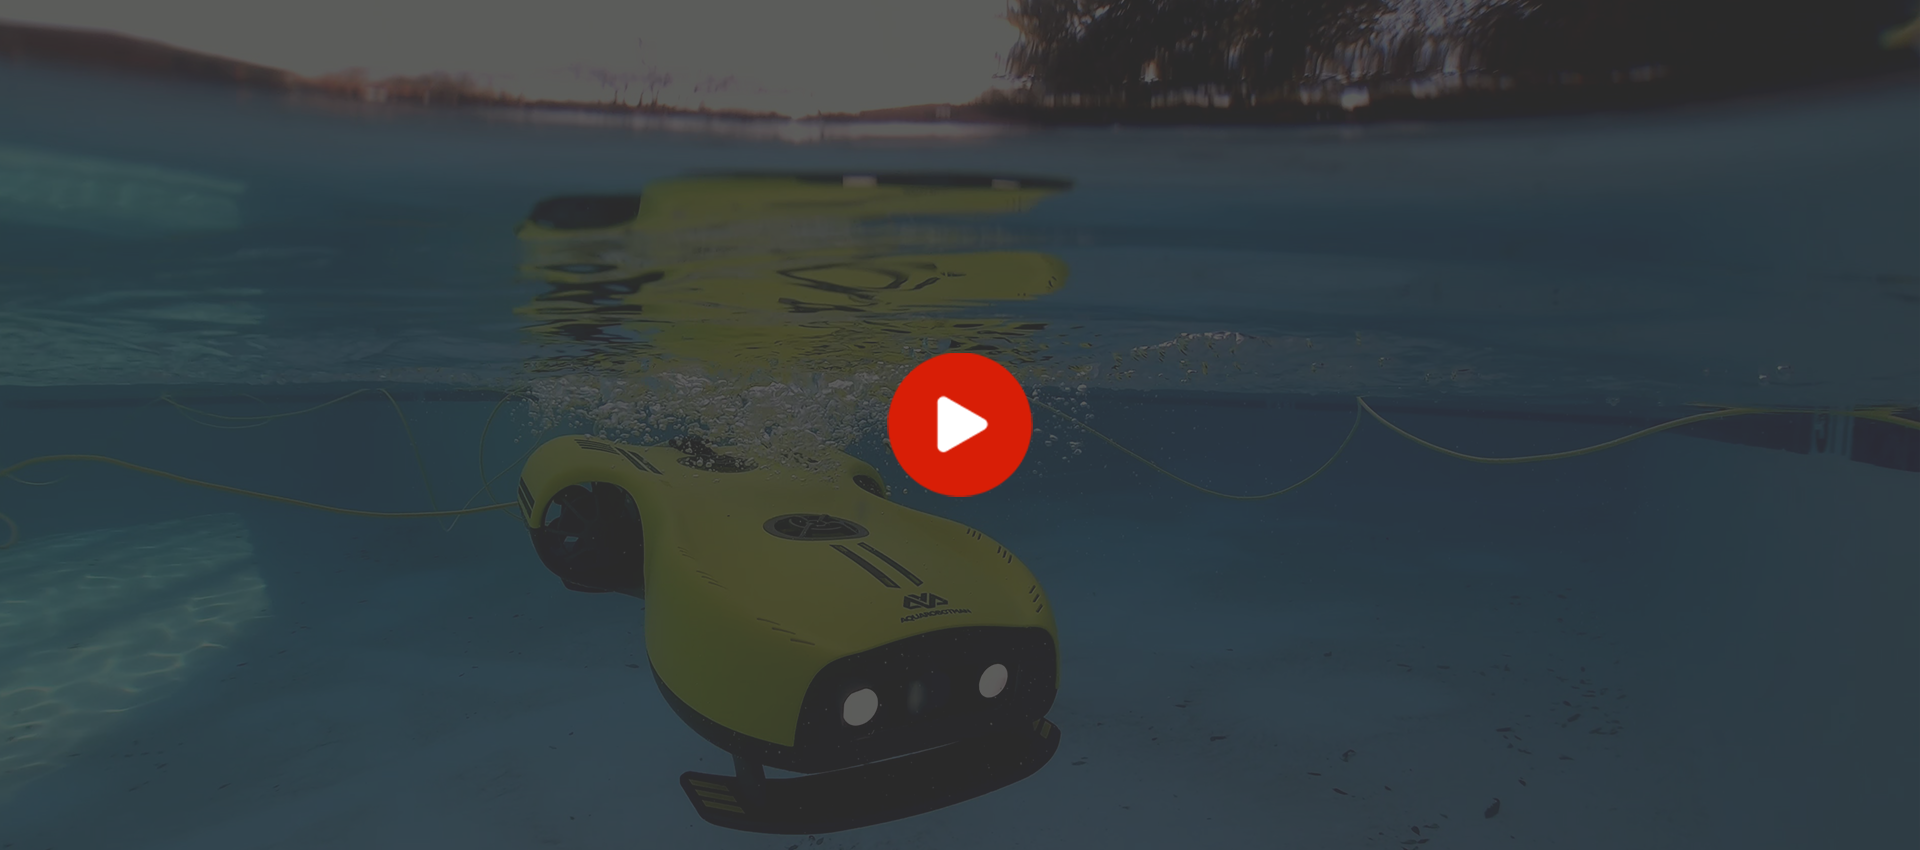 Aquarobotman nemo underwater drones can – Store